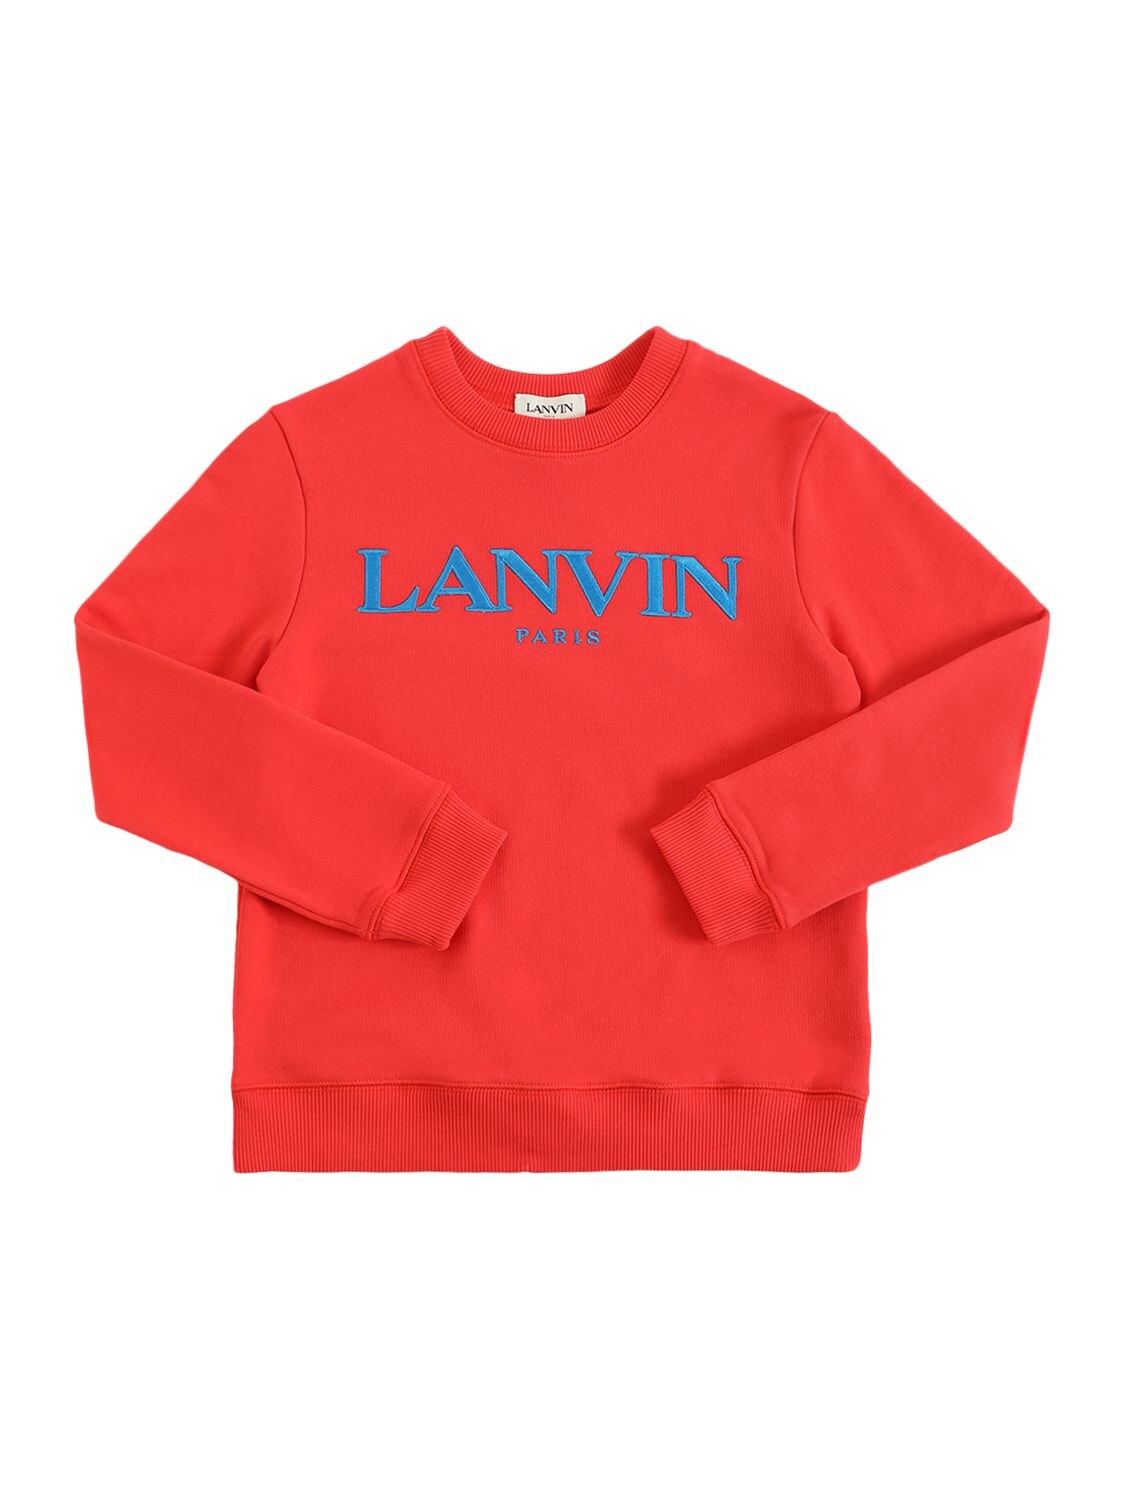 Lanvin Kids' Embroidered Logo Cotton Sweatshirt In Red